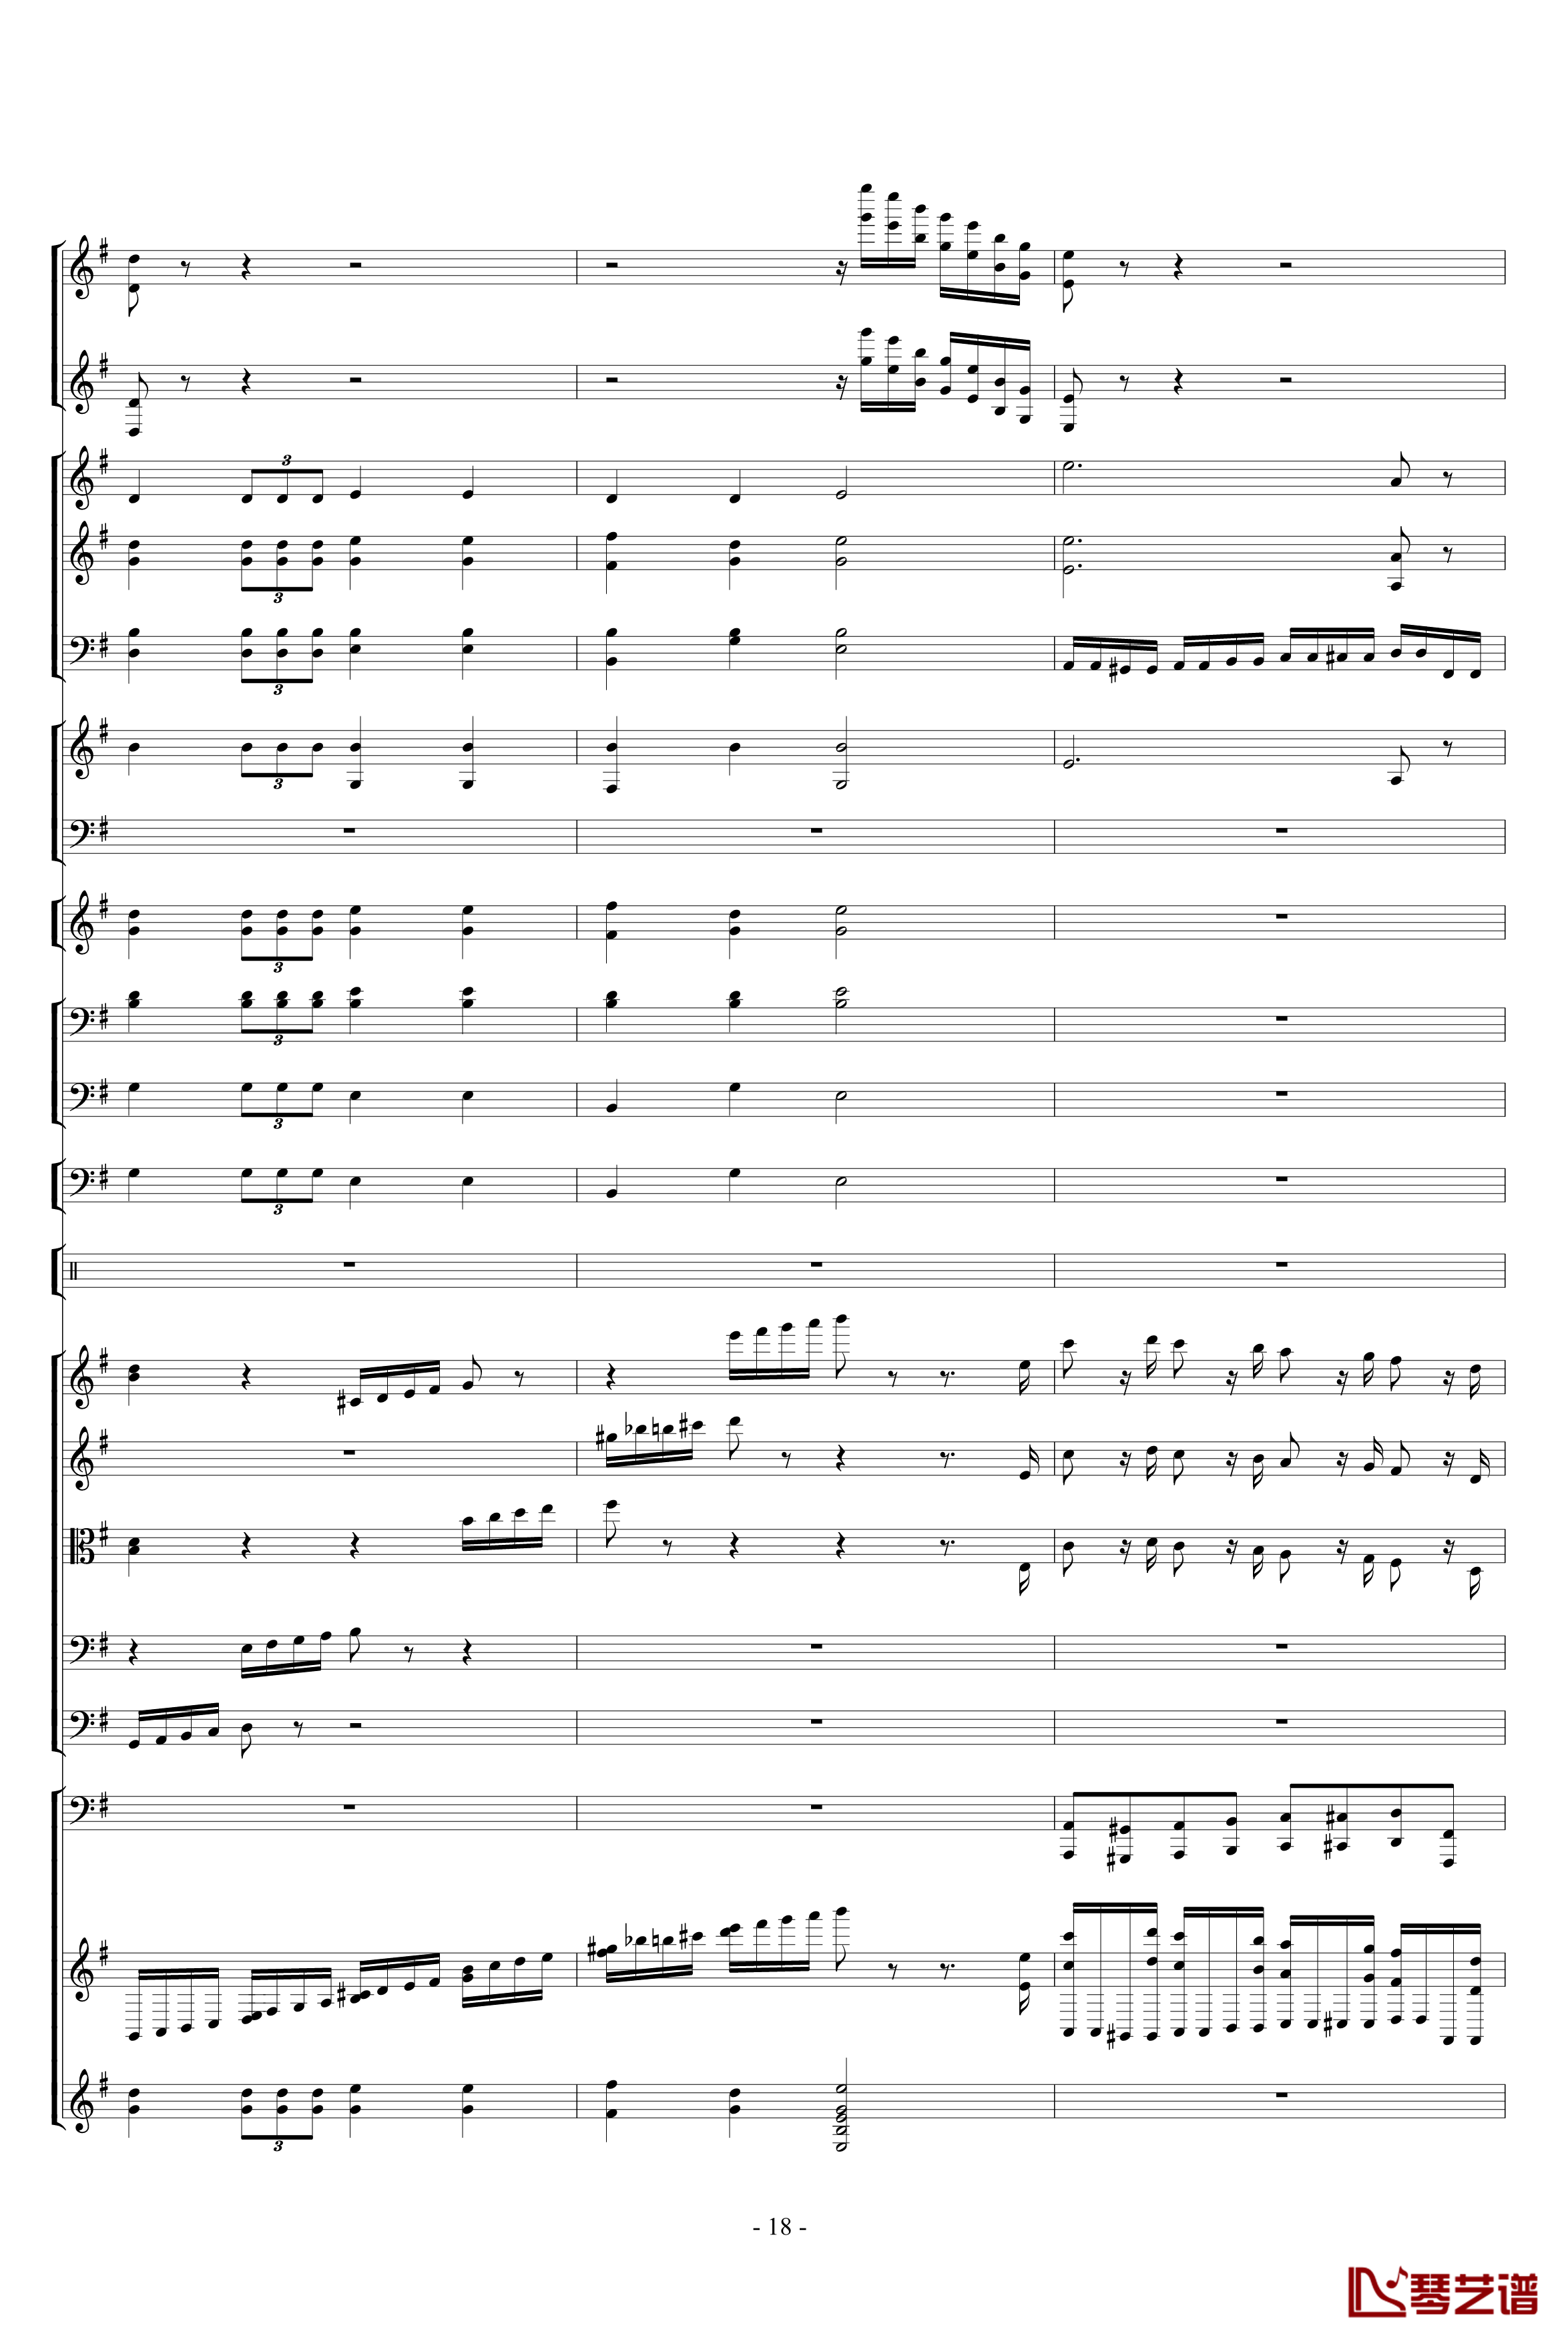 胡桃夹子组曲之进行曲钢琴谱-柴科夫斯基-Peter Ilyich Tchaikovsky18